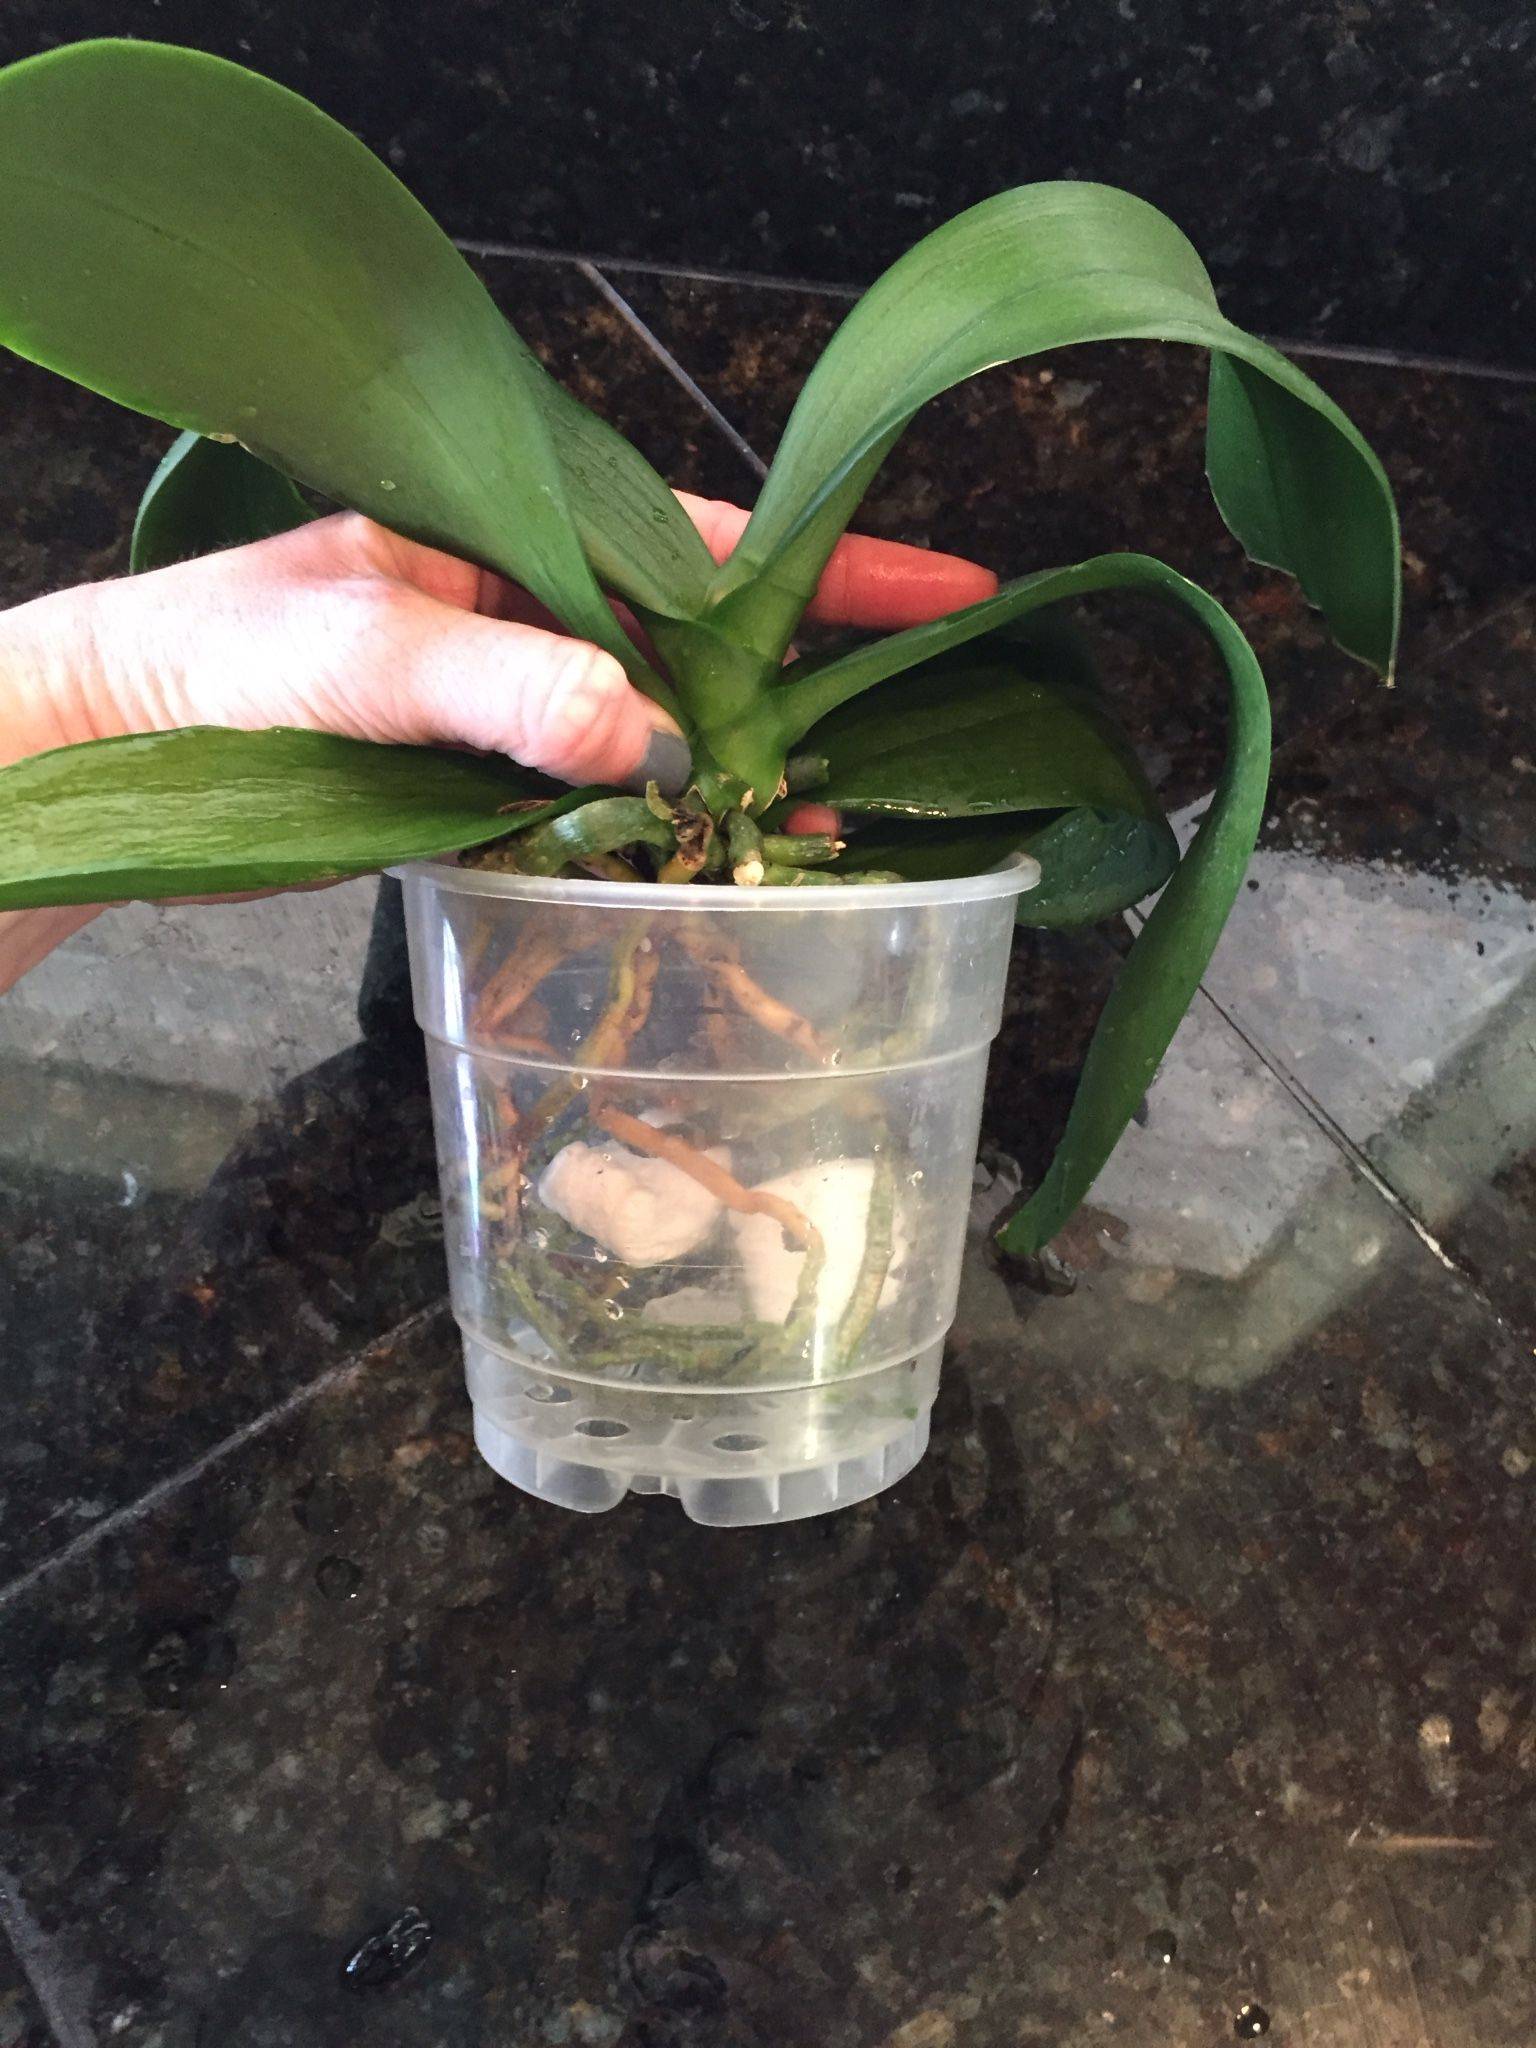 Реанимация орхидеи без корней: можно ли спасти цветок, как снова нарастить в домашних условиях вегетативный орган, в том числе в воде, что для этого делать?дача эксперт